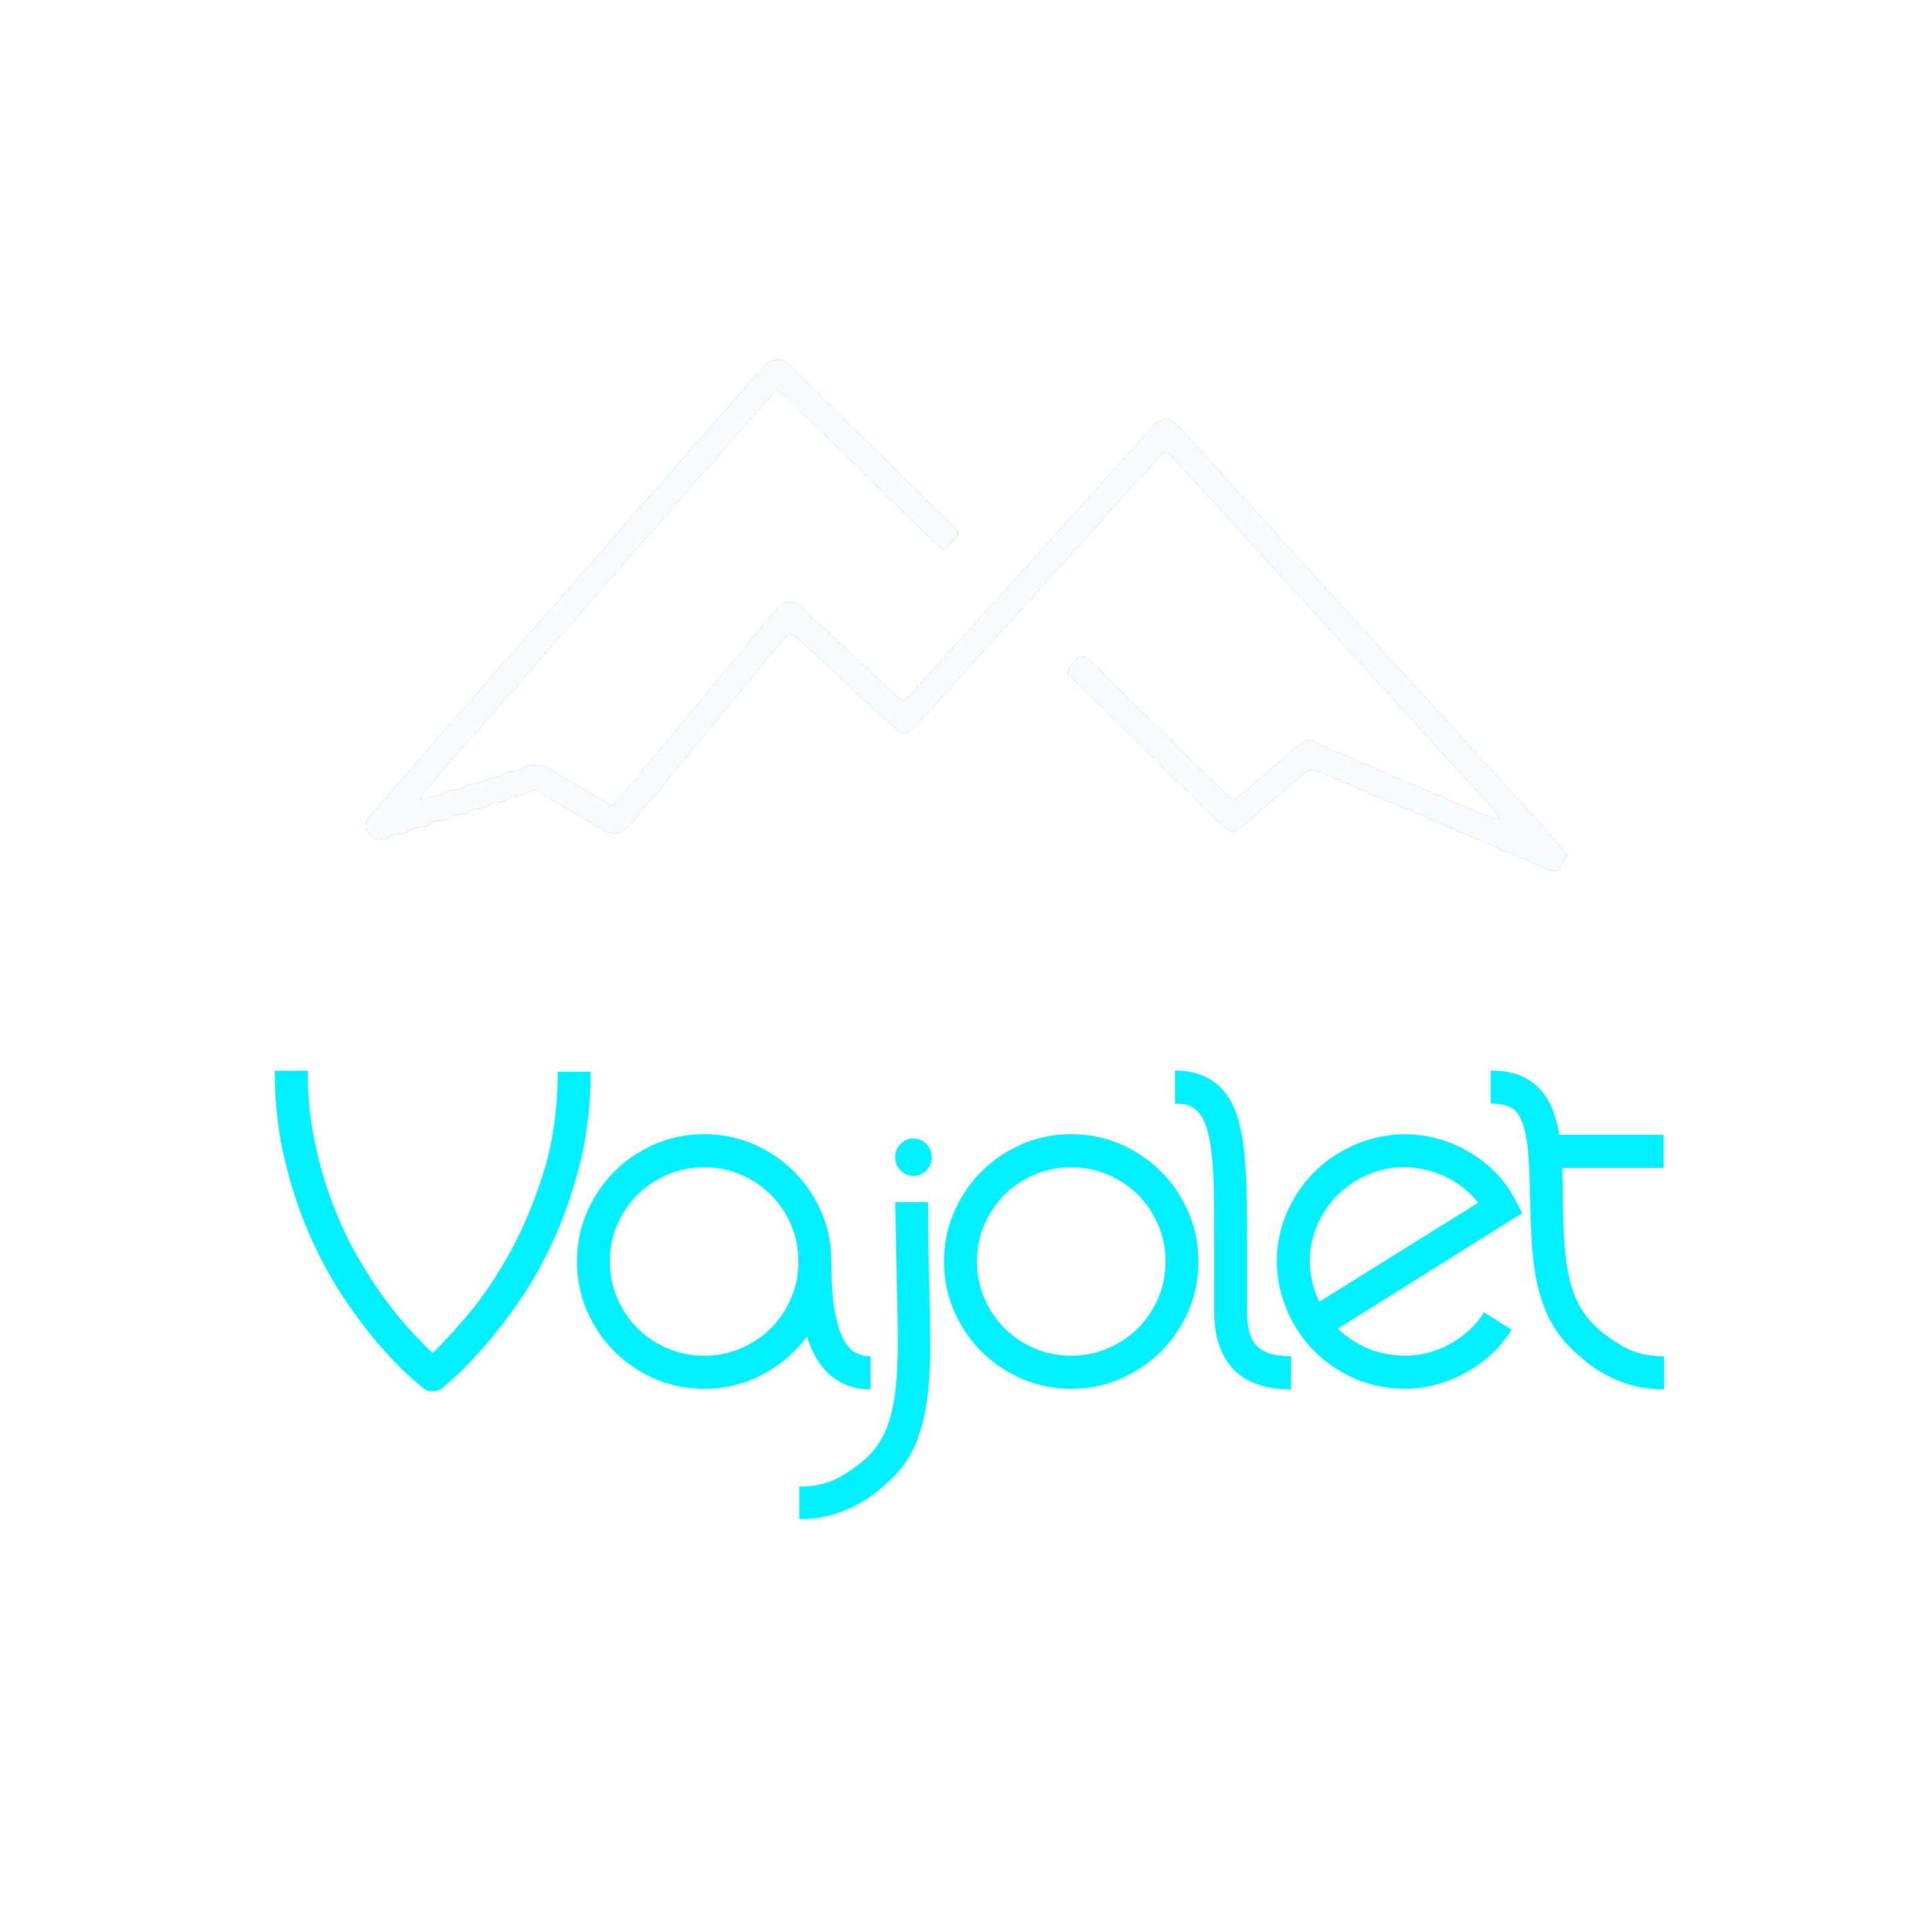 Ski Center Vajolet